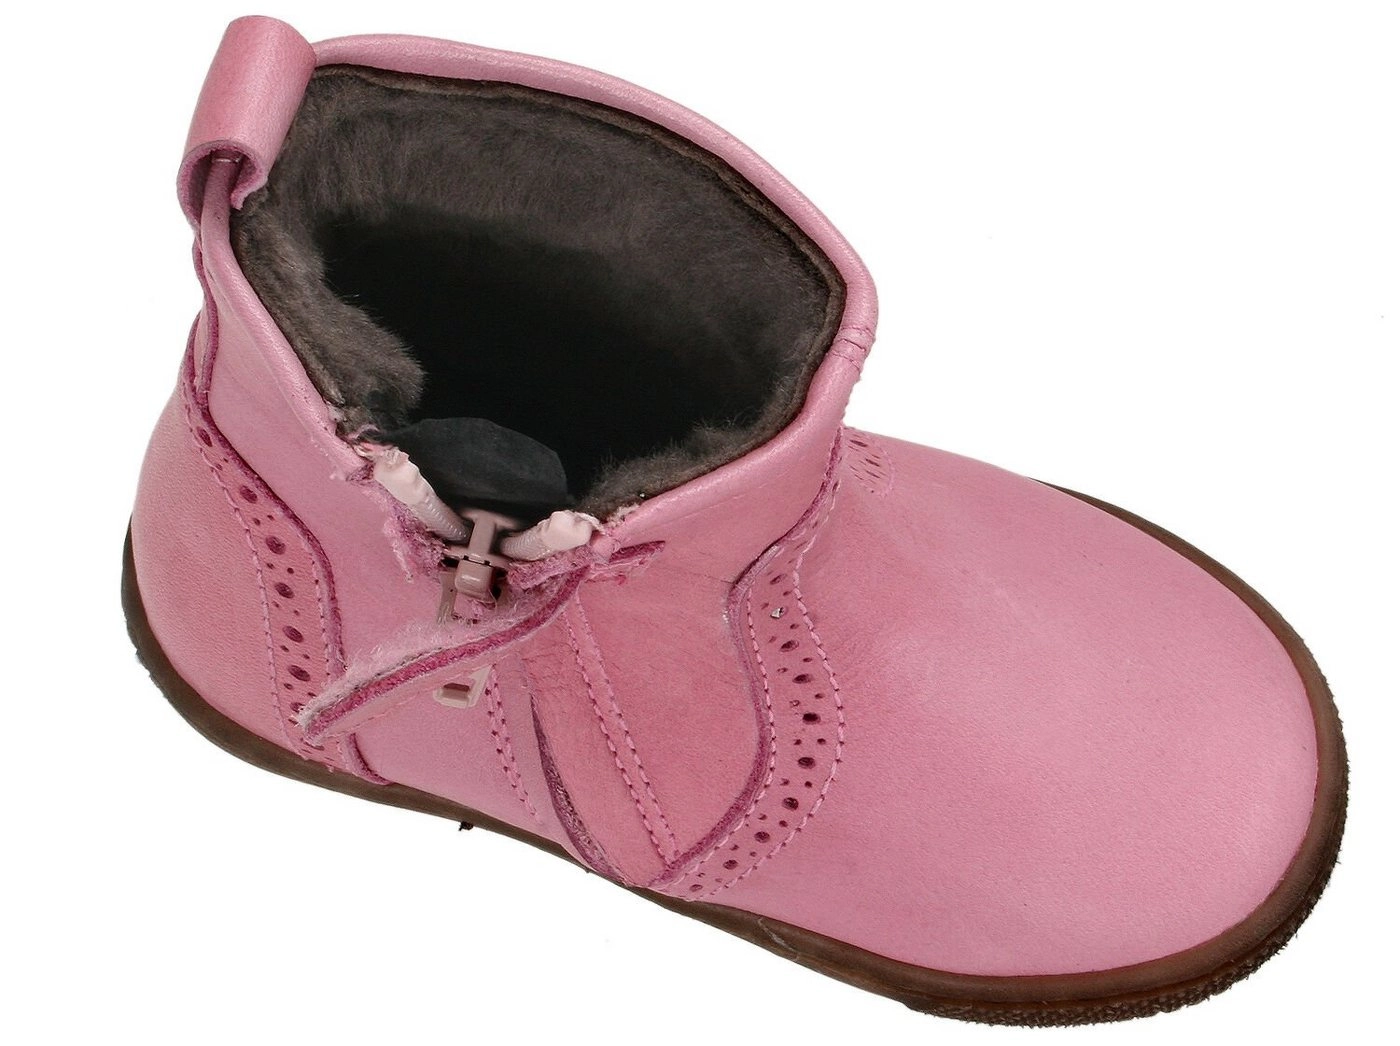 Clic »Clic! Boots Stiefel 9069 Leder Lammfell Lauflern Schuhe Mädchen« Schnürstiefelette